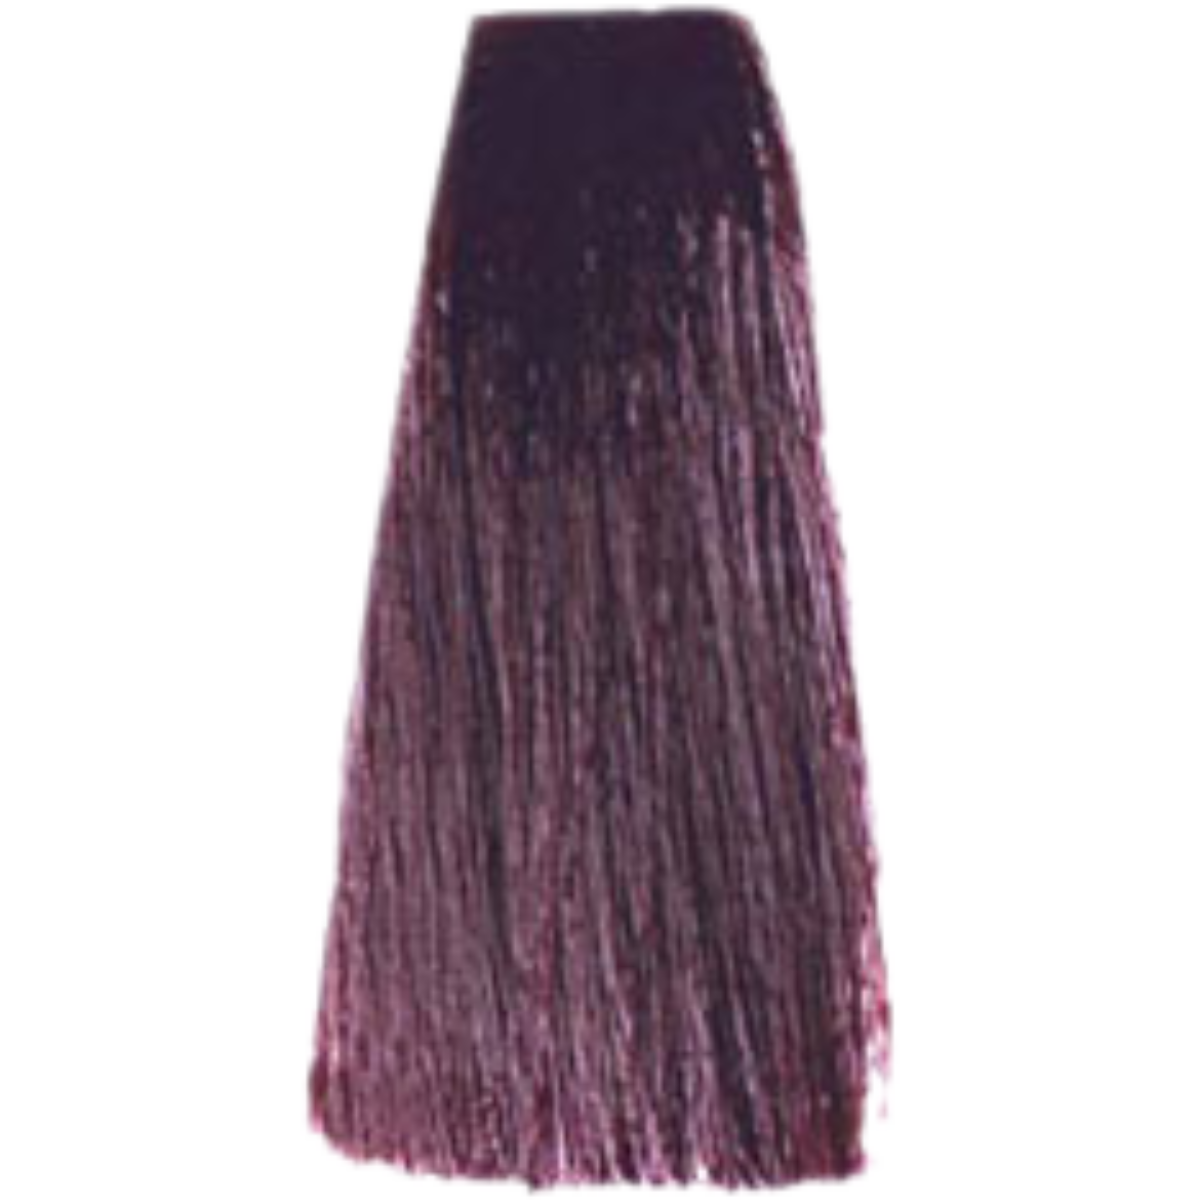 צבע שיער 5.20 VIOLET IRISEE פארמויטה FarmaVita צבע לשיער 100 גרם